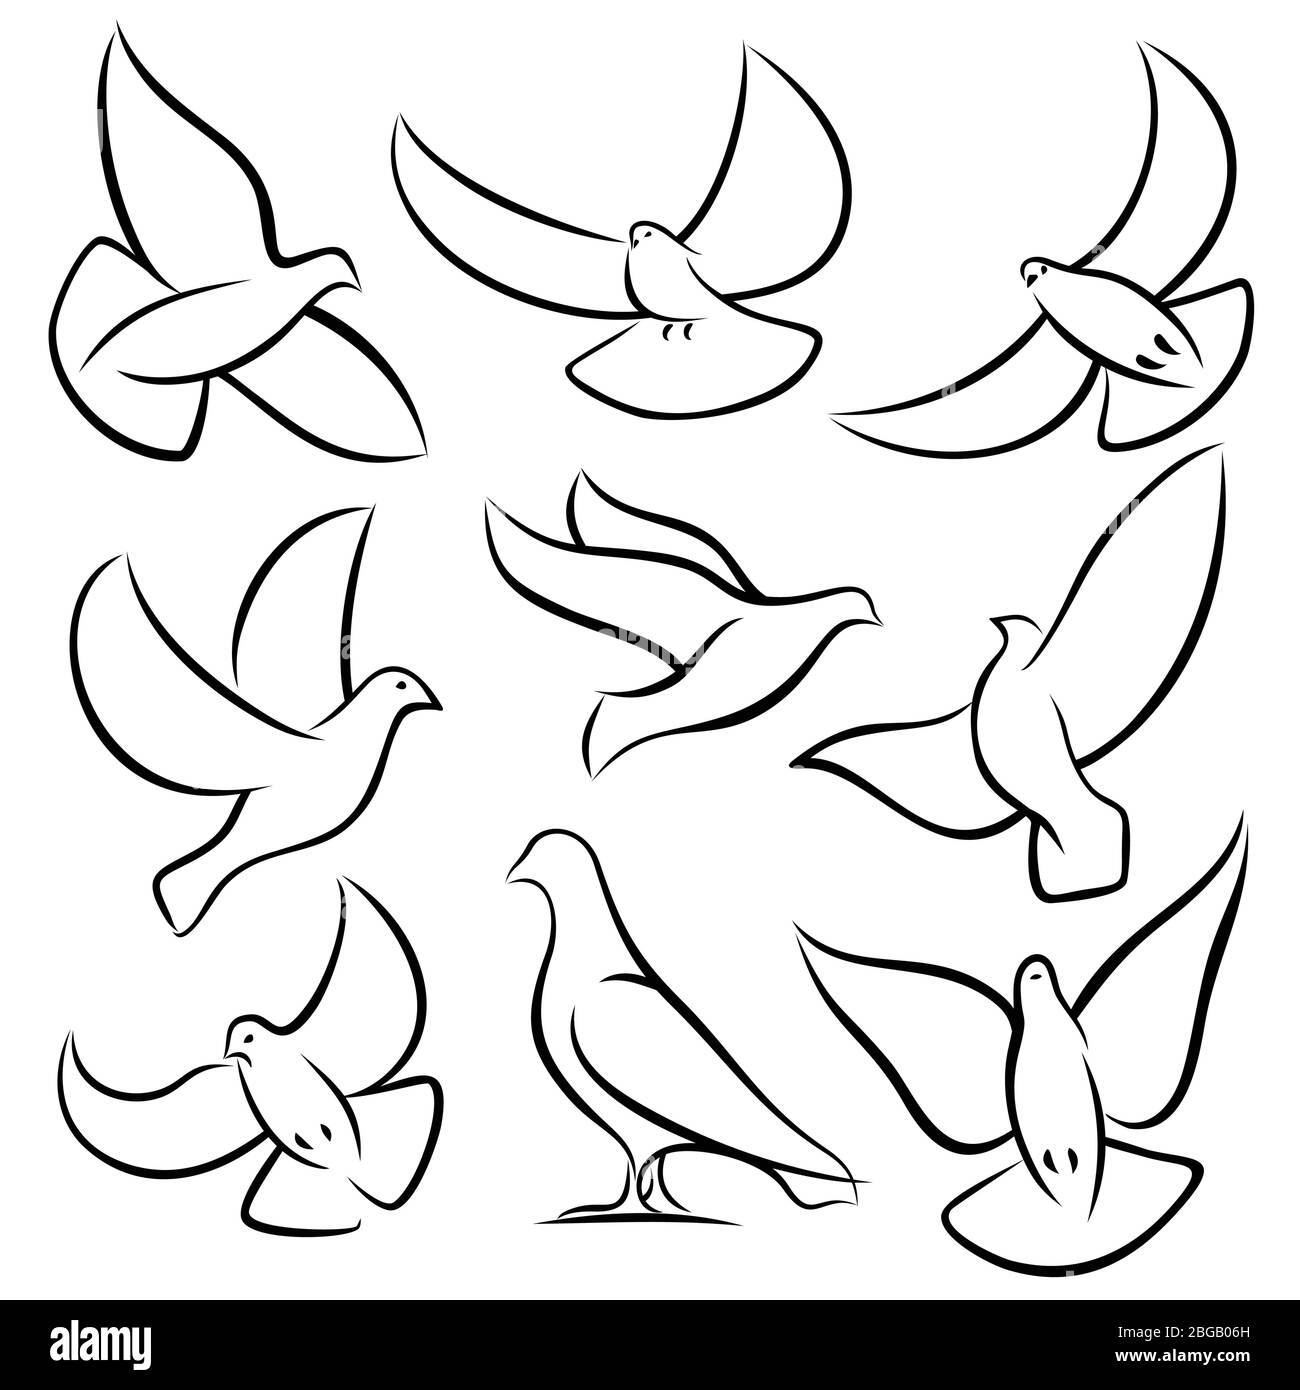 Umreißen Sie fliegende Tauben, weiße Vögel und Tauben Vektor-Logos. Holy Spirit, ostern, Liebe und Frieden Design-Elemente. Taubenzeichnung, Vogeltaubenfreiheit und Liebesdarstellung Stock Vektor